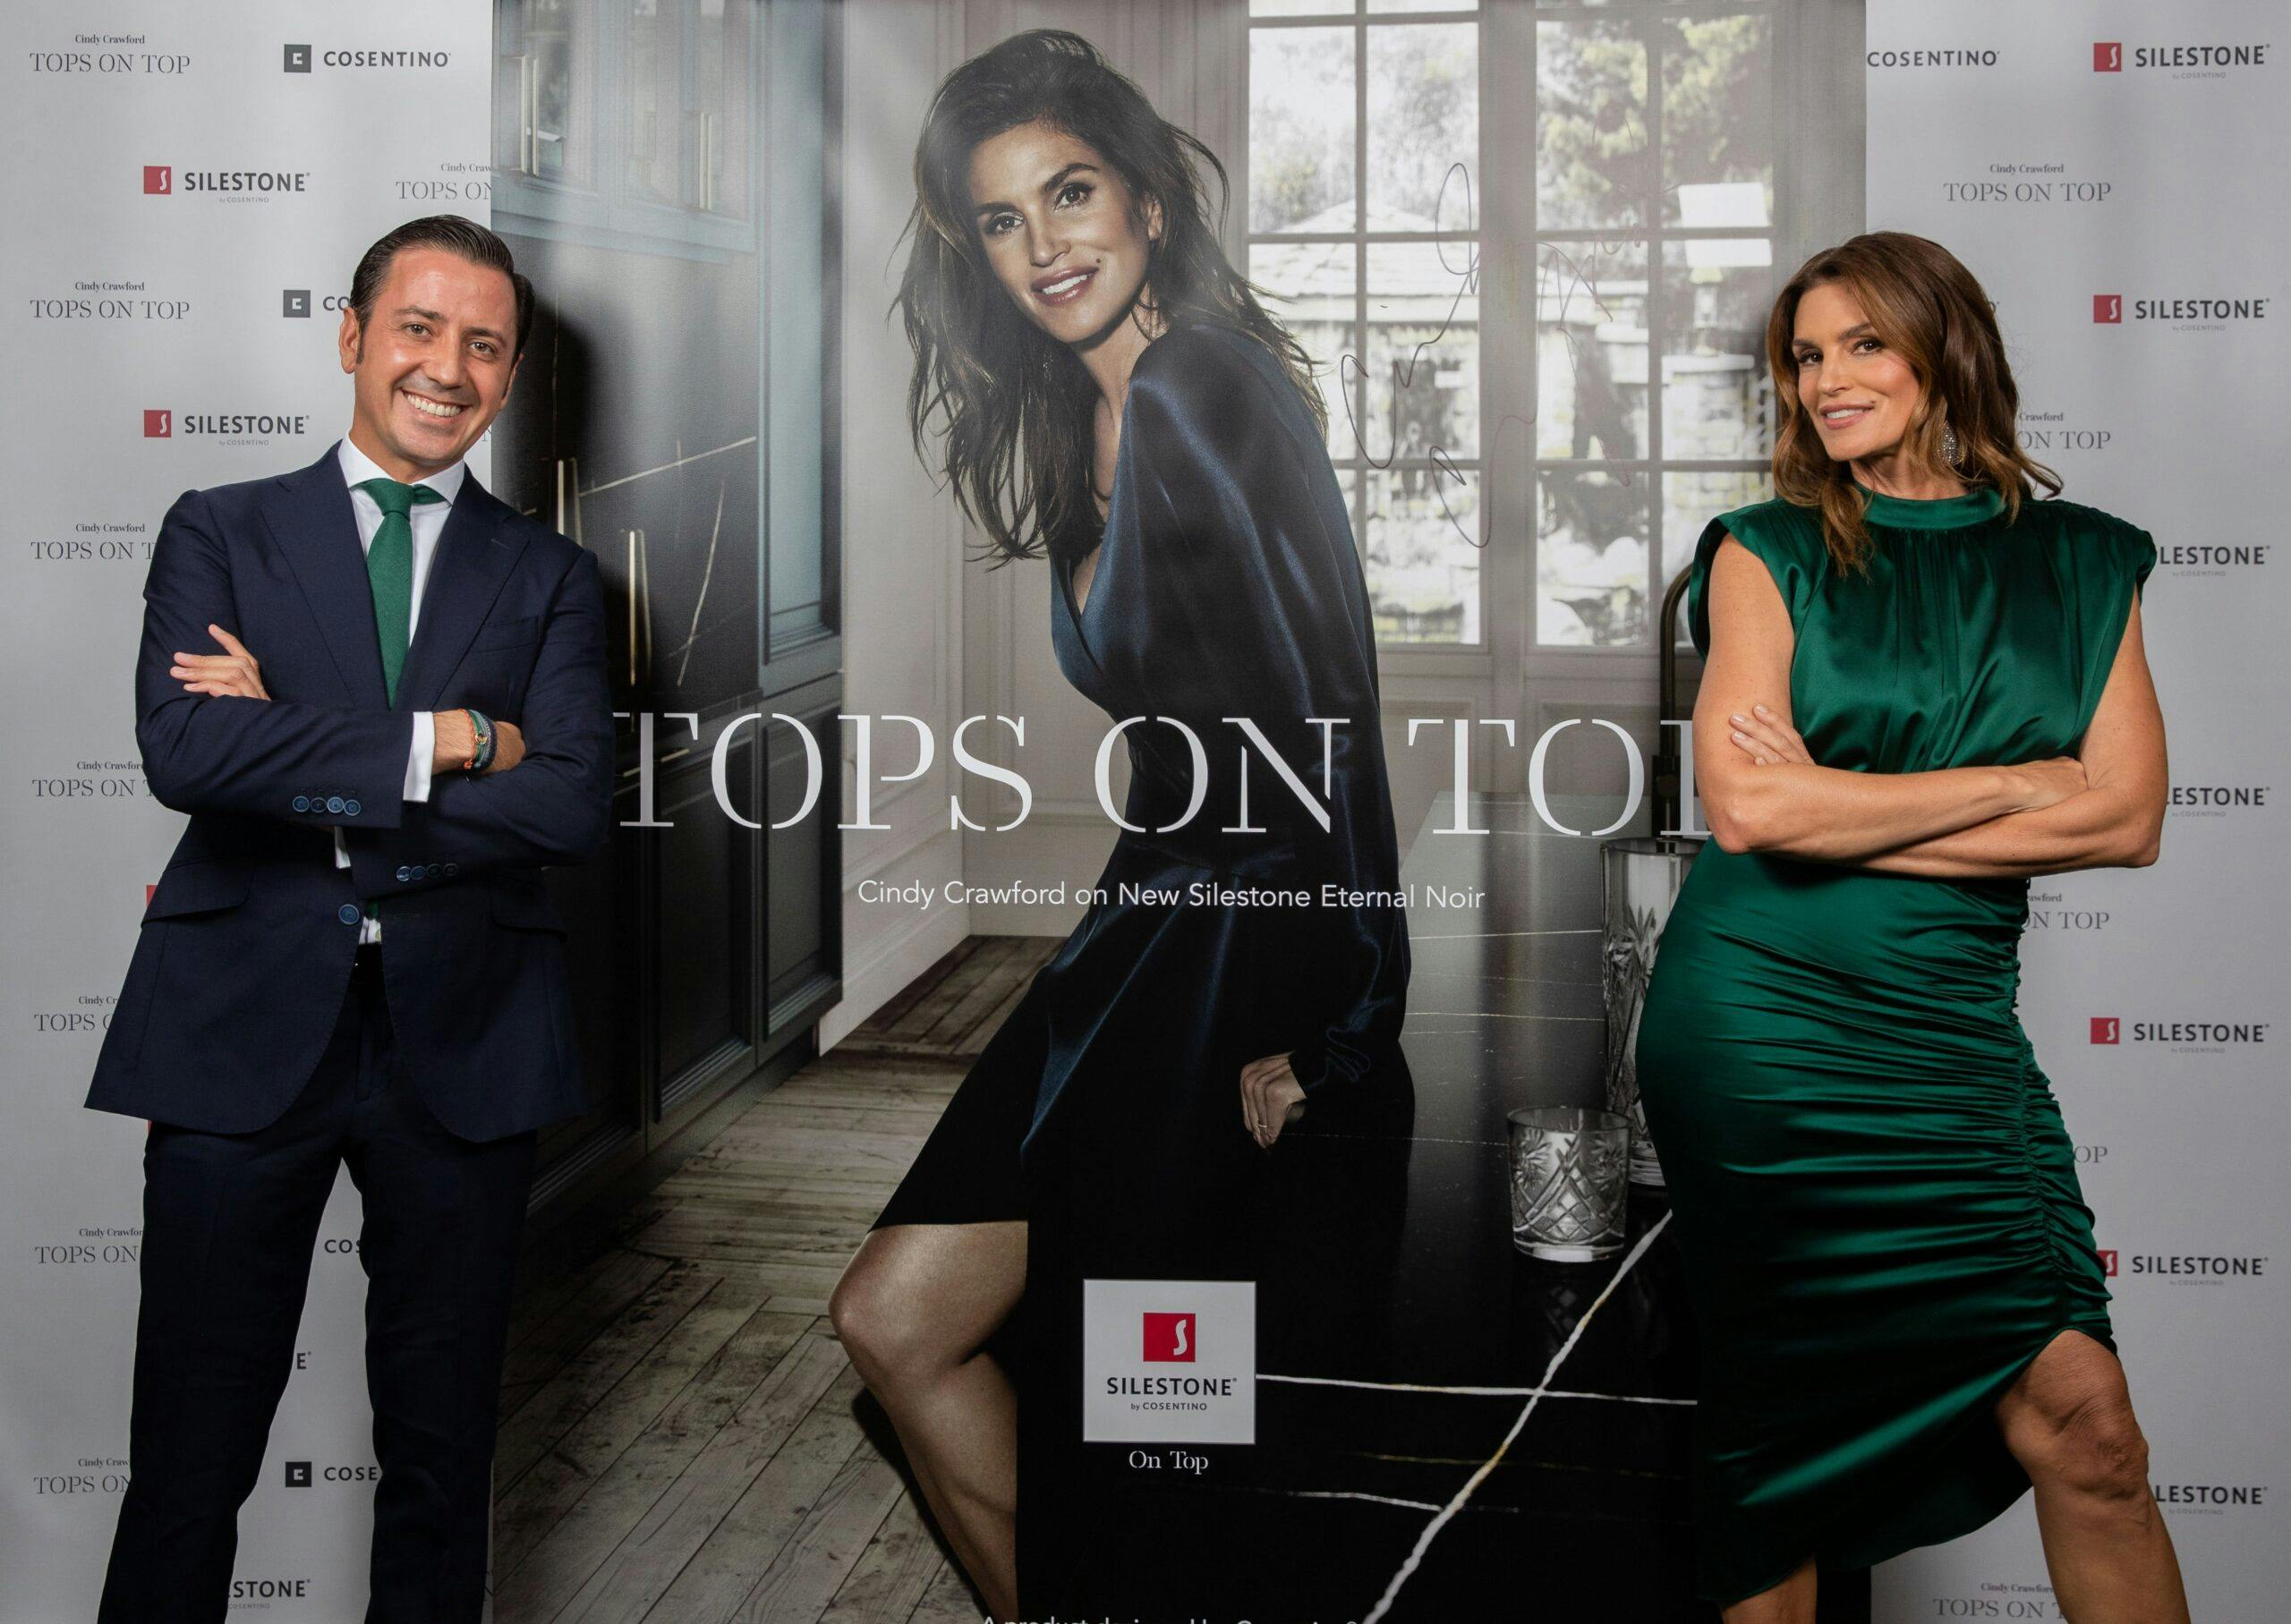 Imagem número 32 da actual secção de Silestone® apresenta a sua nova campanha com Cindy Crawford - “Tops on Top 2019” da Cosentino Portugal